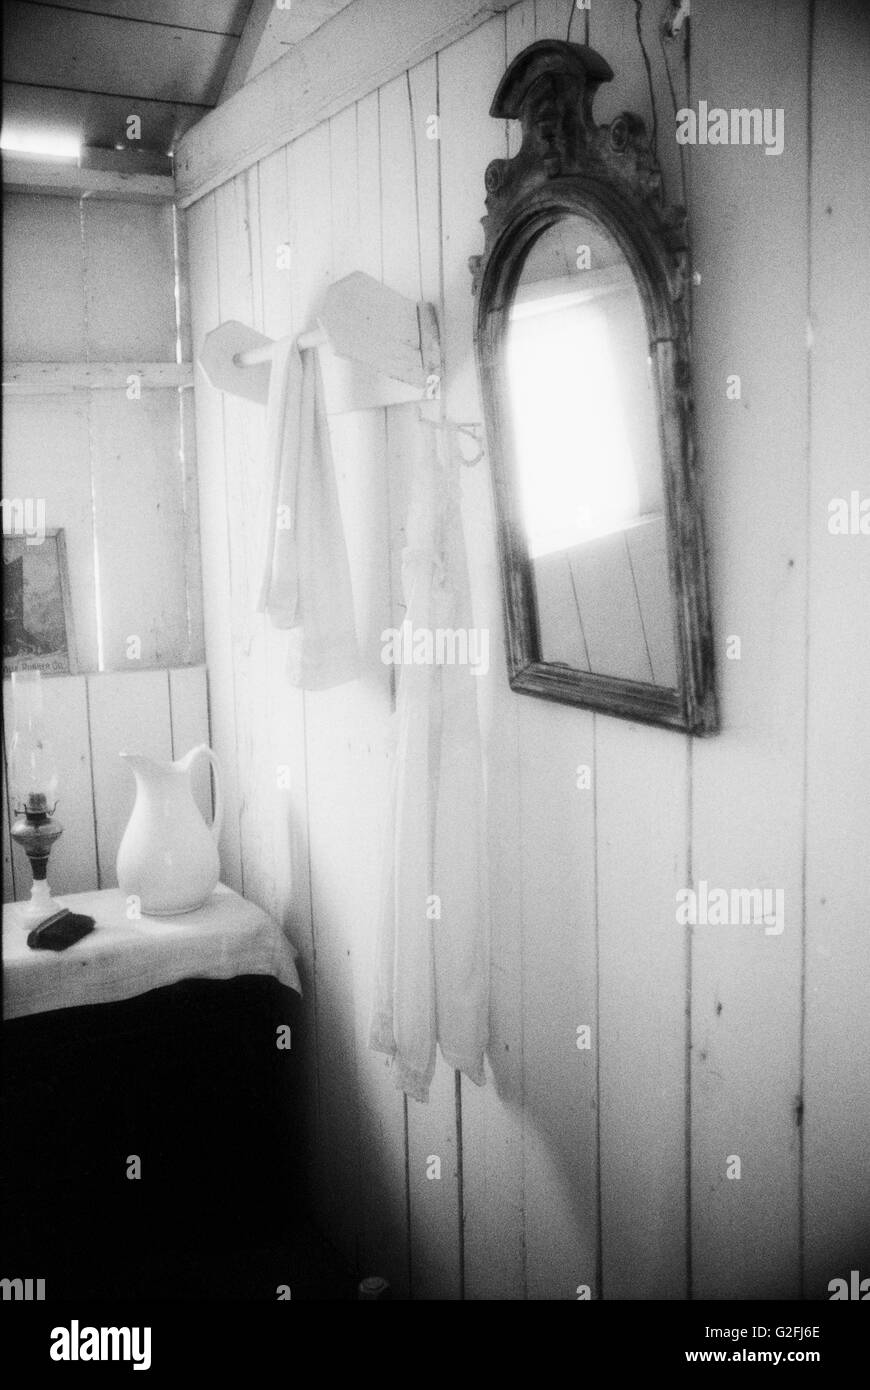 Bagno rustico con vecchio specchio Foto Stock